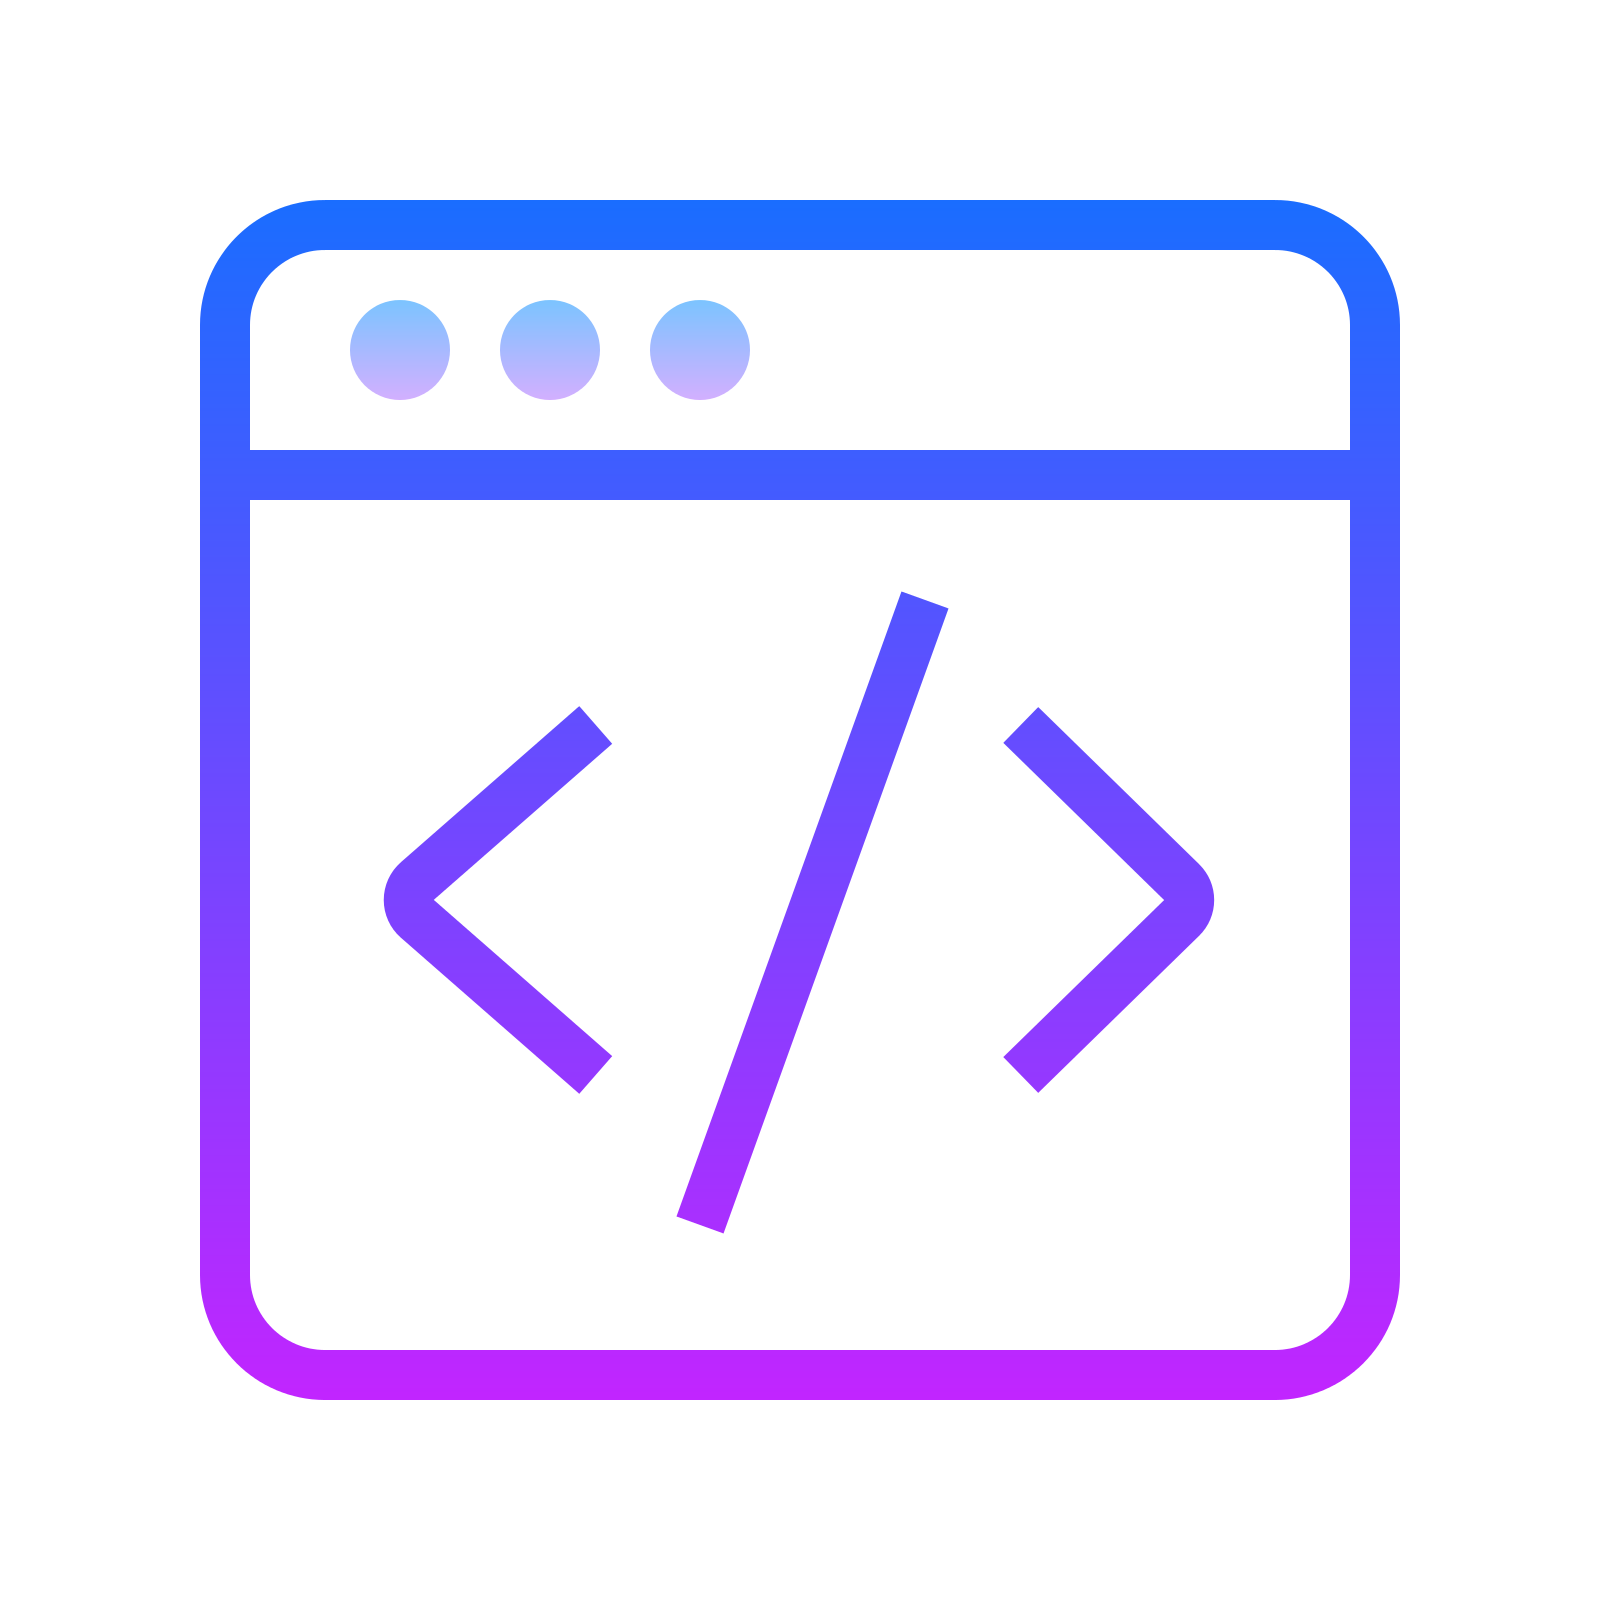 Code icon. Иконка кода. Программирование иконка. Значок кодера. Программирование пиктограмма.